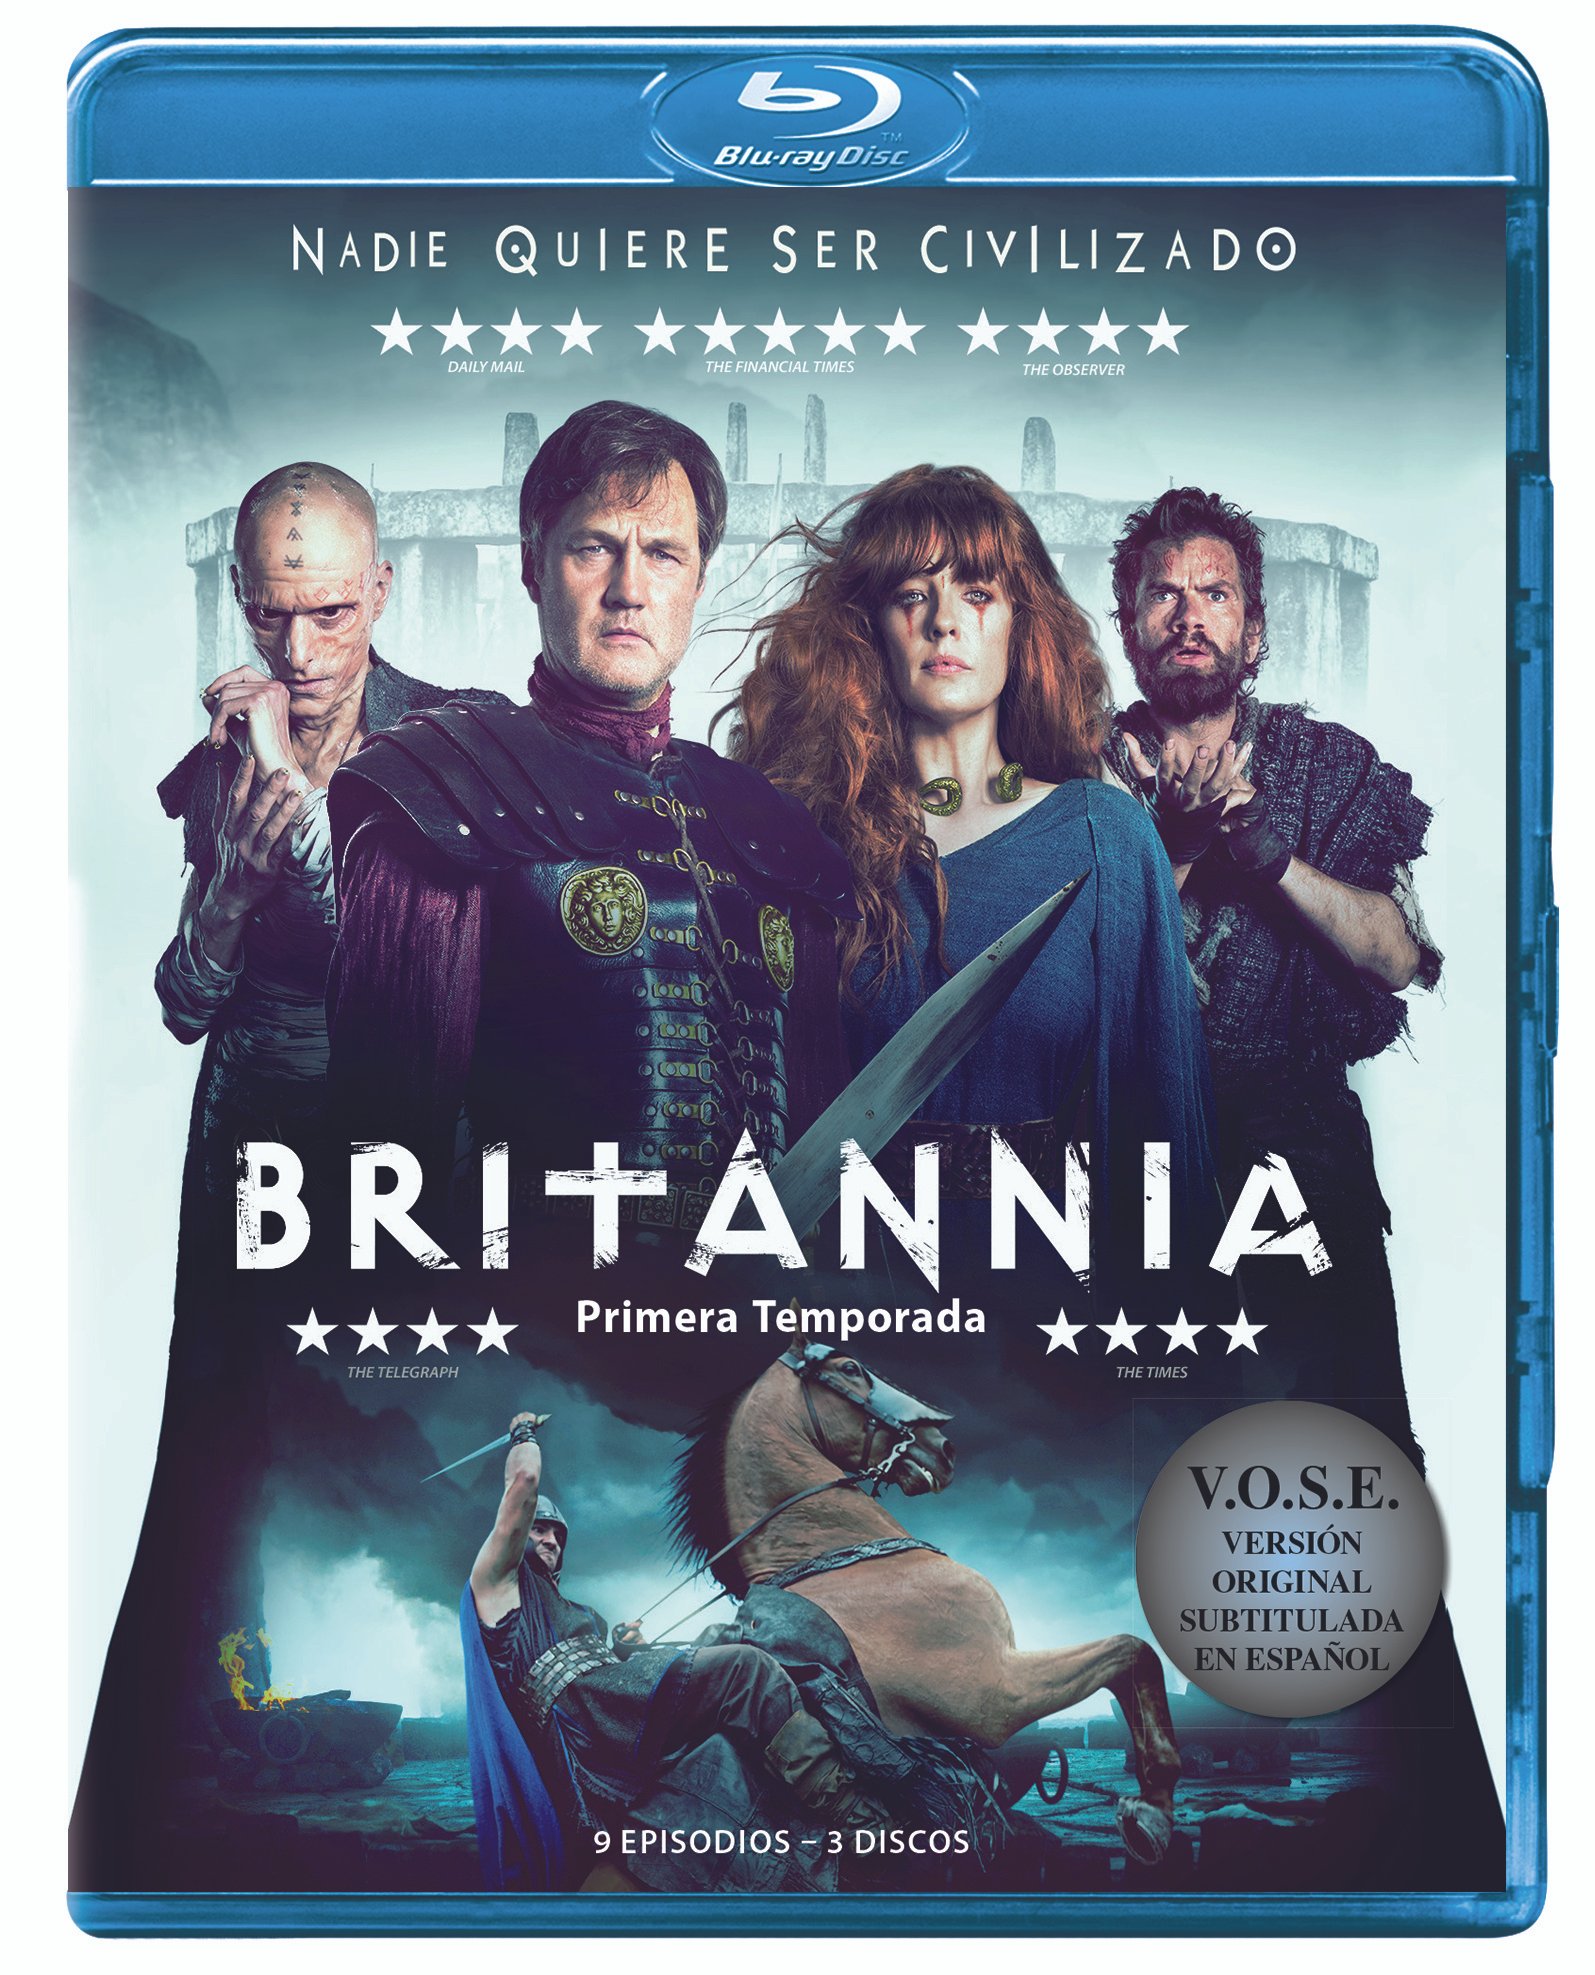 Lanzamientos 4K, Blu-ray y Dvd: 'Mamma Mia!', 'Casper', 'El hilo invisible',... • En tu pantalla